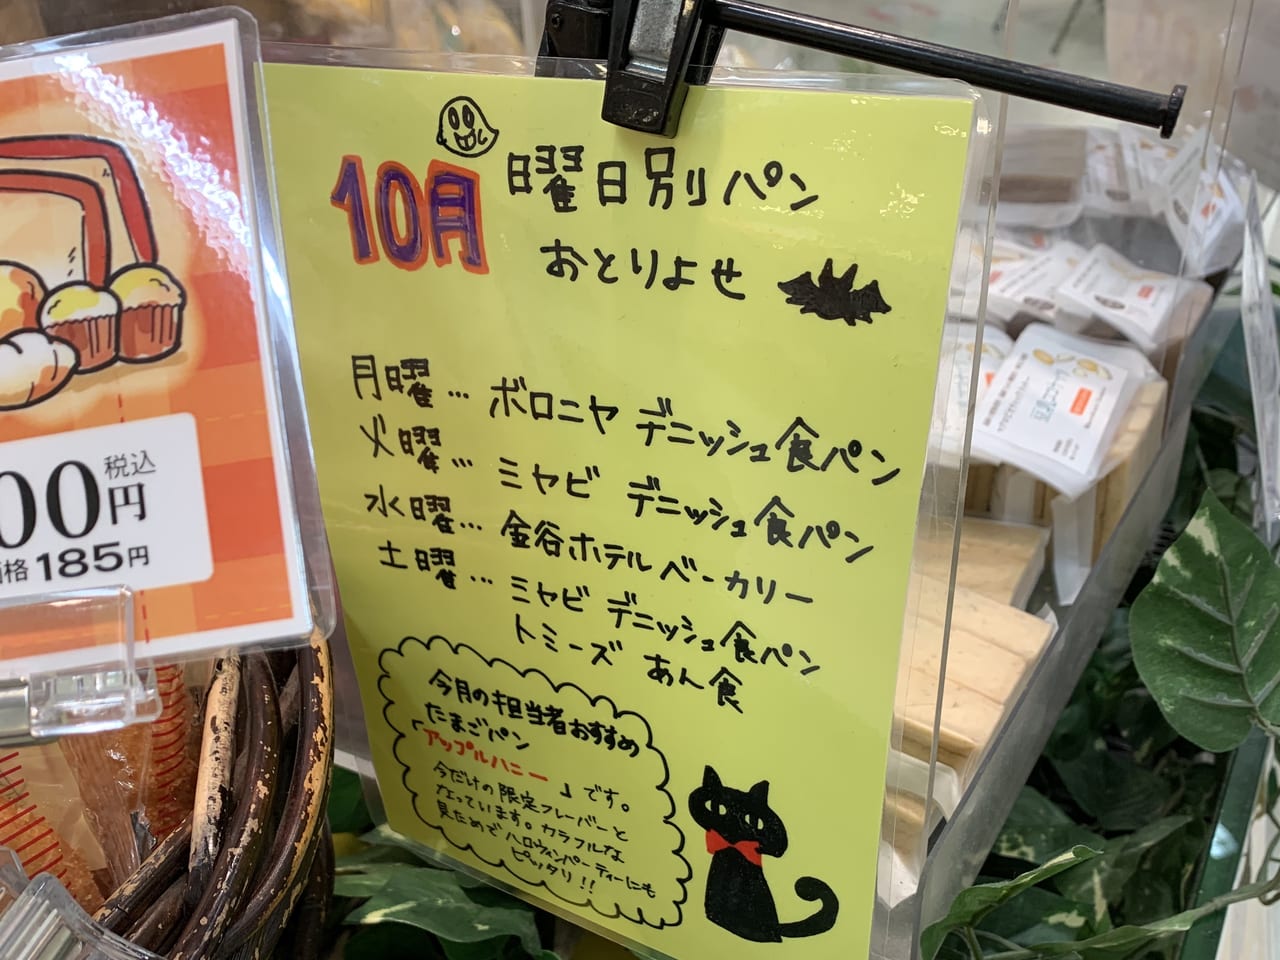 草加市 秘密のケンミンshow で紹介された神戸で愛される食パンが 実は草加市内でも購入出来るんです 号外net 草加市